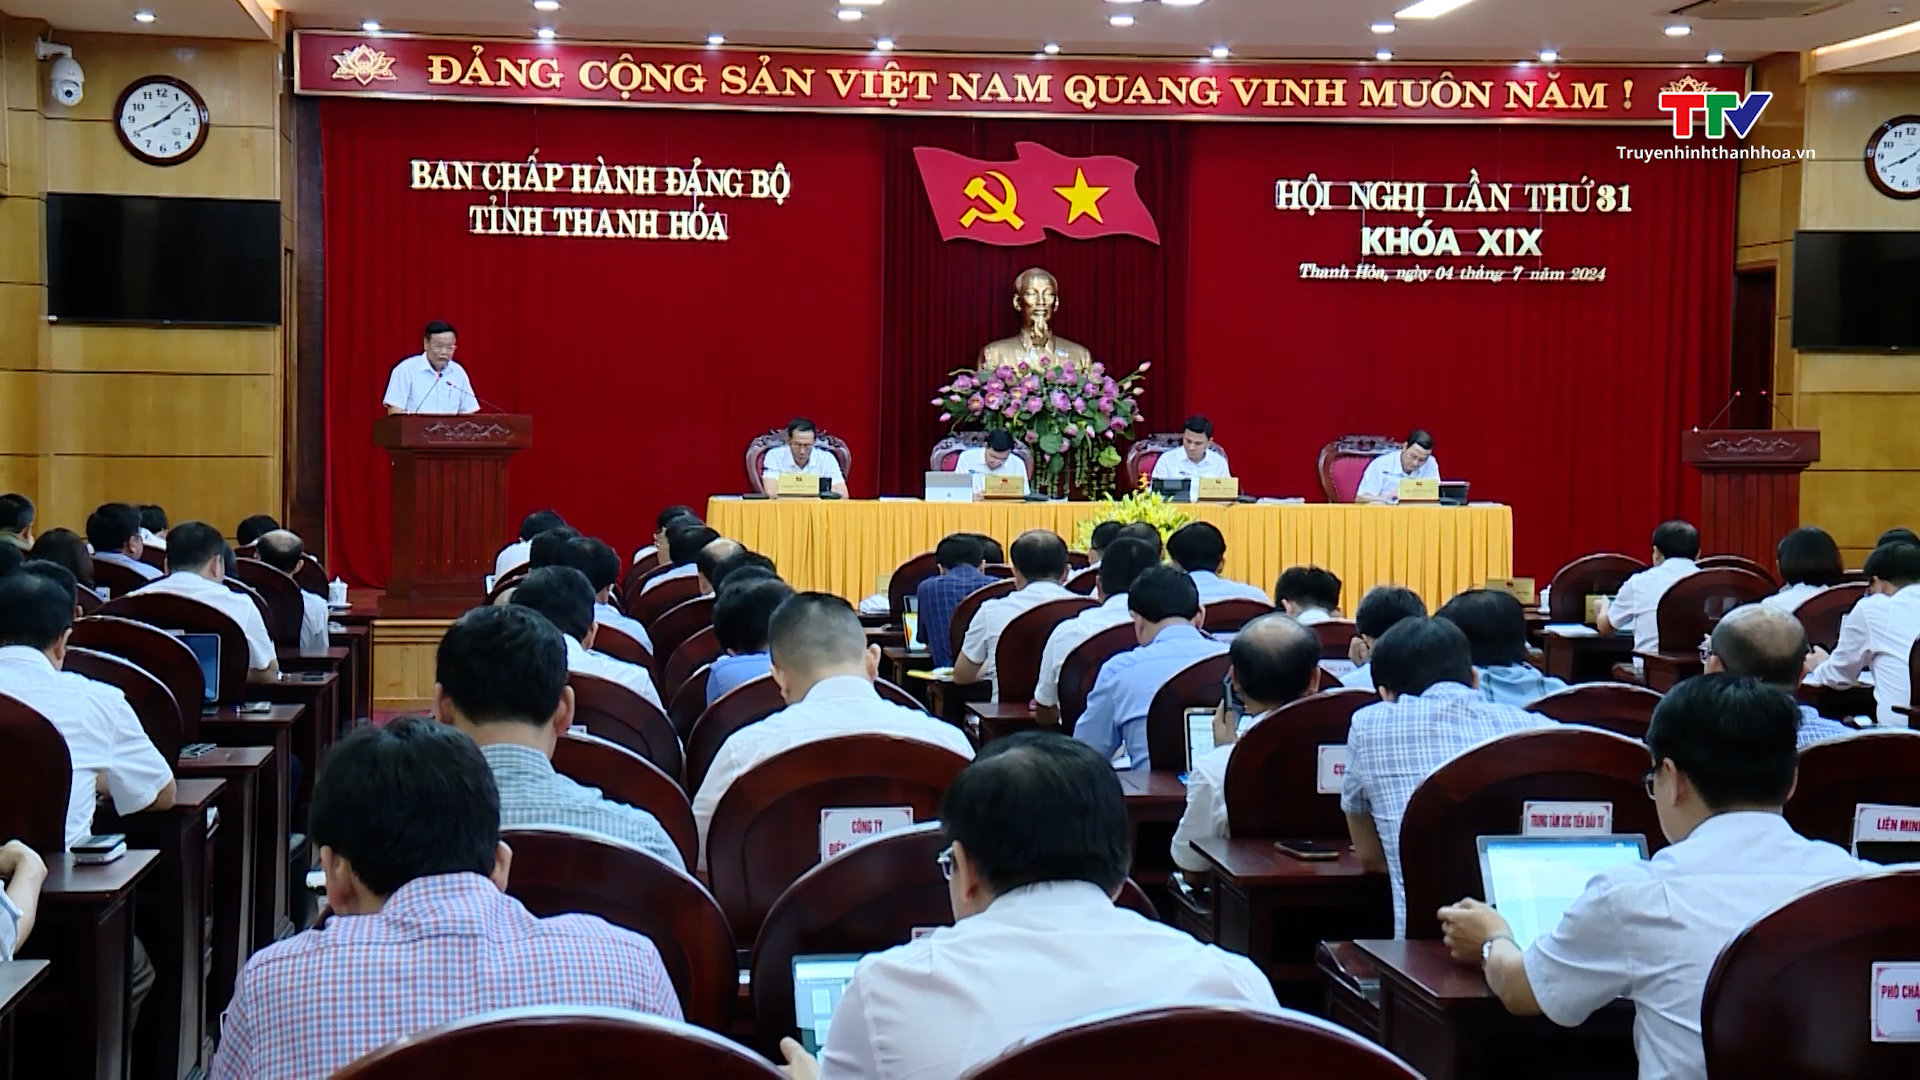 Hội nghị lần thứ 31 Ban Chấp hành Đảng bộ tỉnh Thanh Hoá- Ảnh 2.